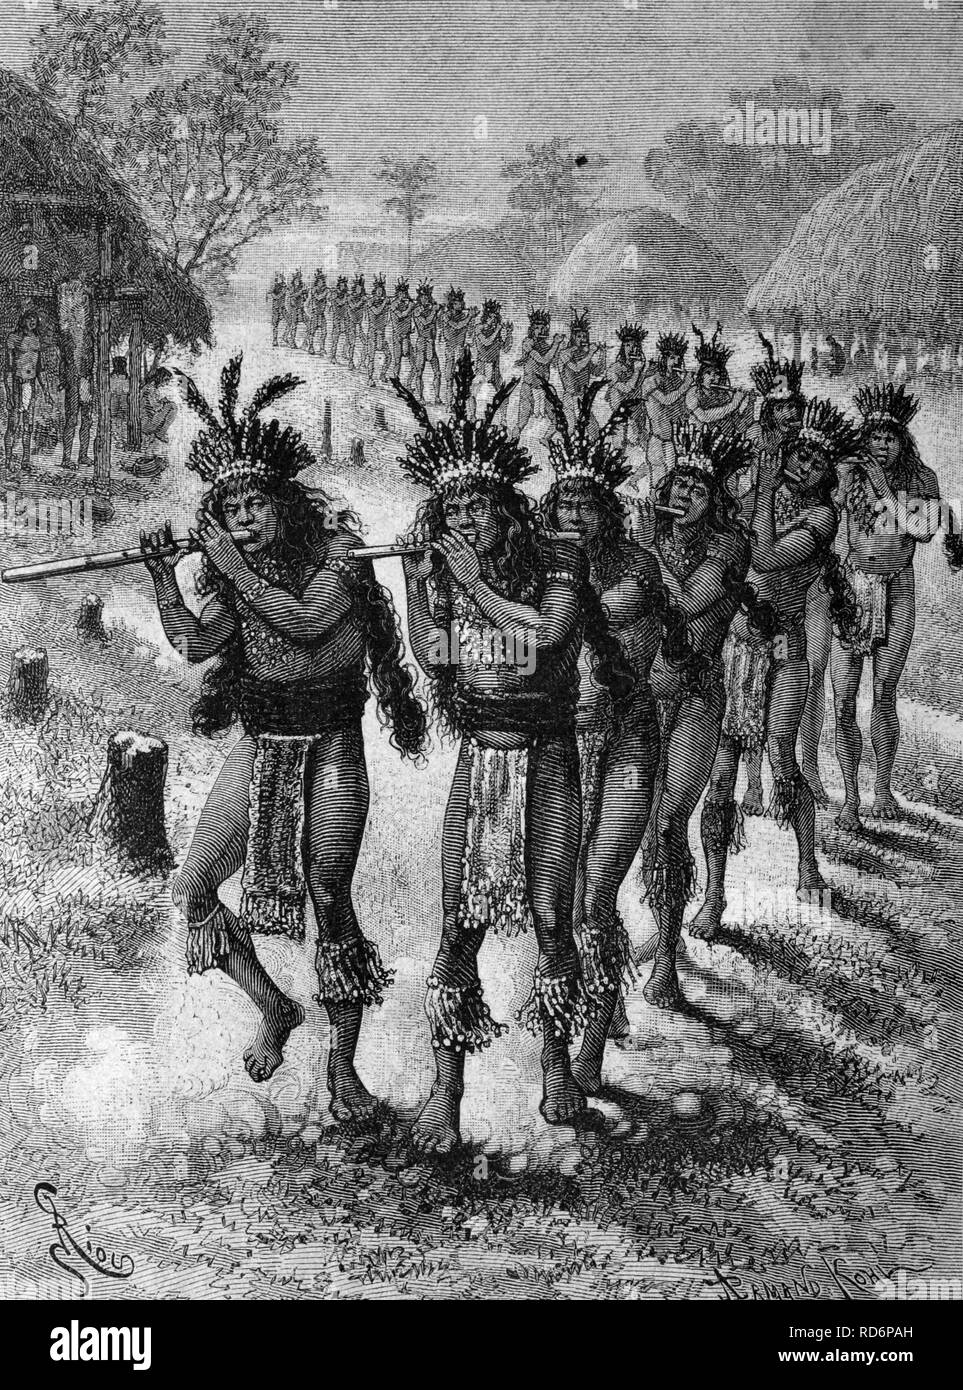 La danse de l'Rouconyenne Tule, les Amérindiens en Amérique du Sud, l'illustration du historique, vers 1886 Banque D'Images